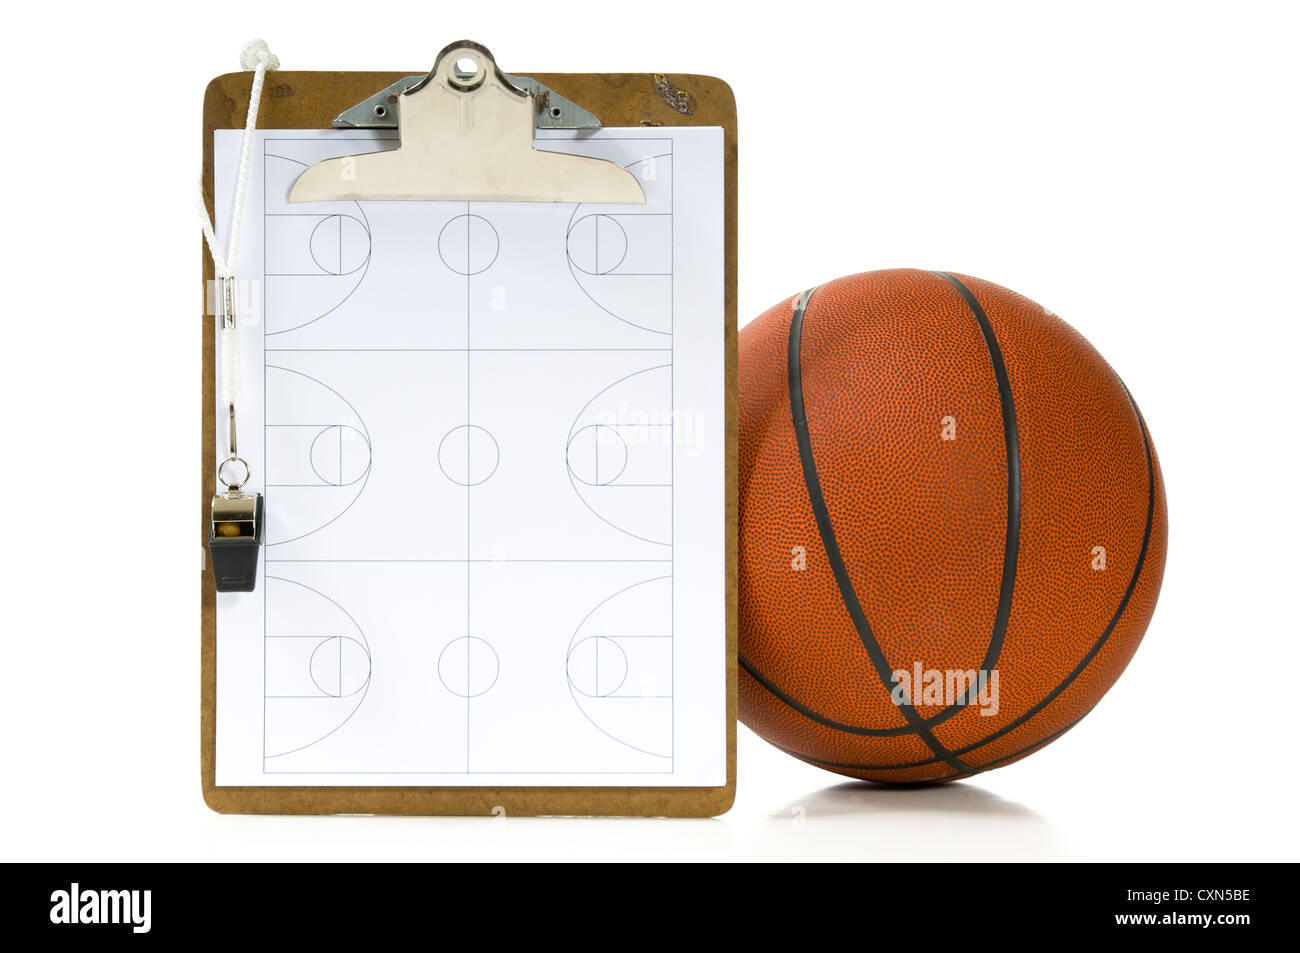 Appunti, fischio, appunti e la sfera - voci un pullman avrebbe utilizzato quando il coaching o insegnare la pallacanestro su sfondo bianco Foto Stock